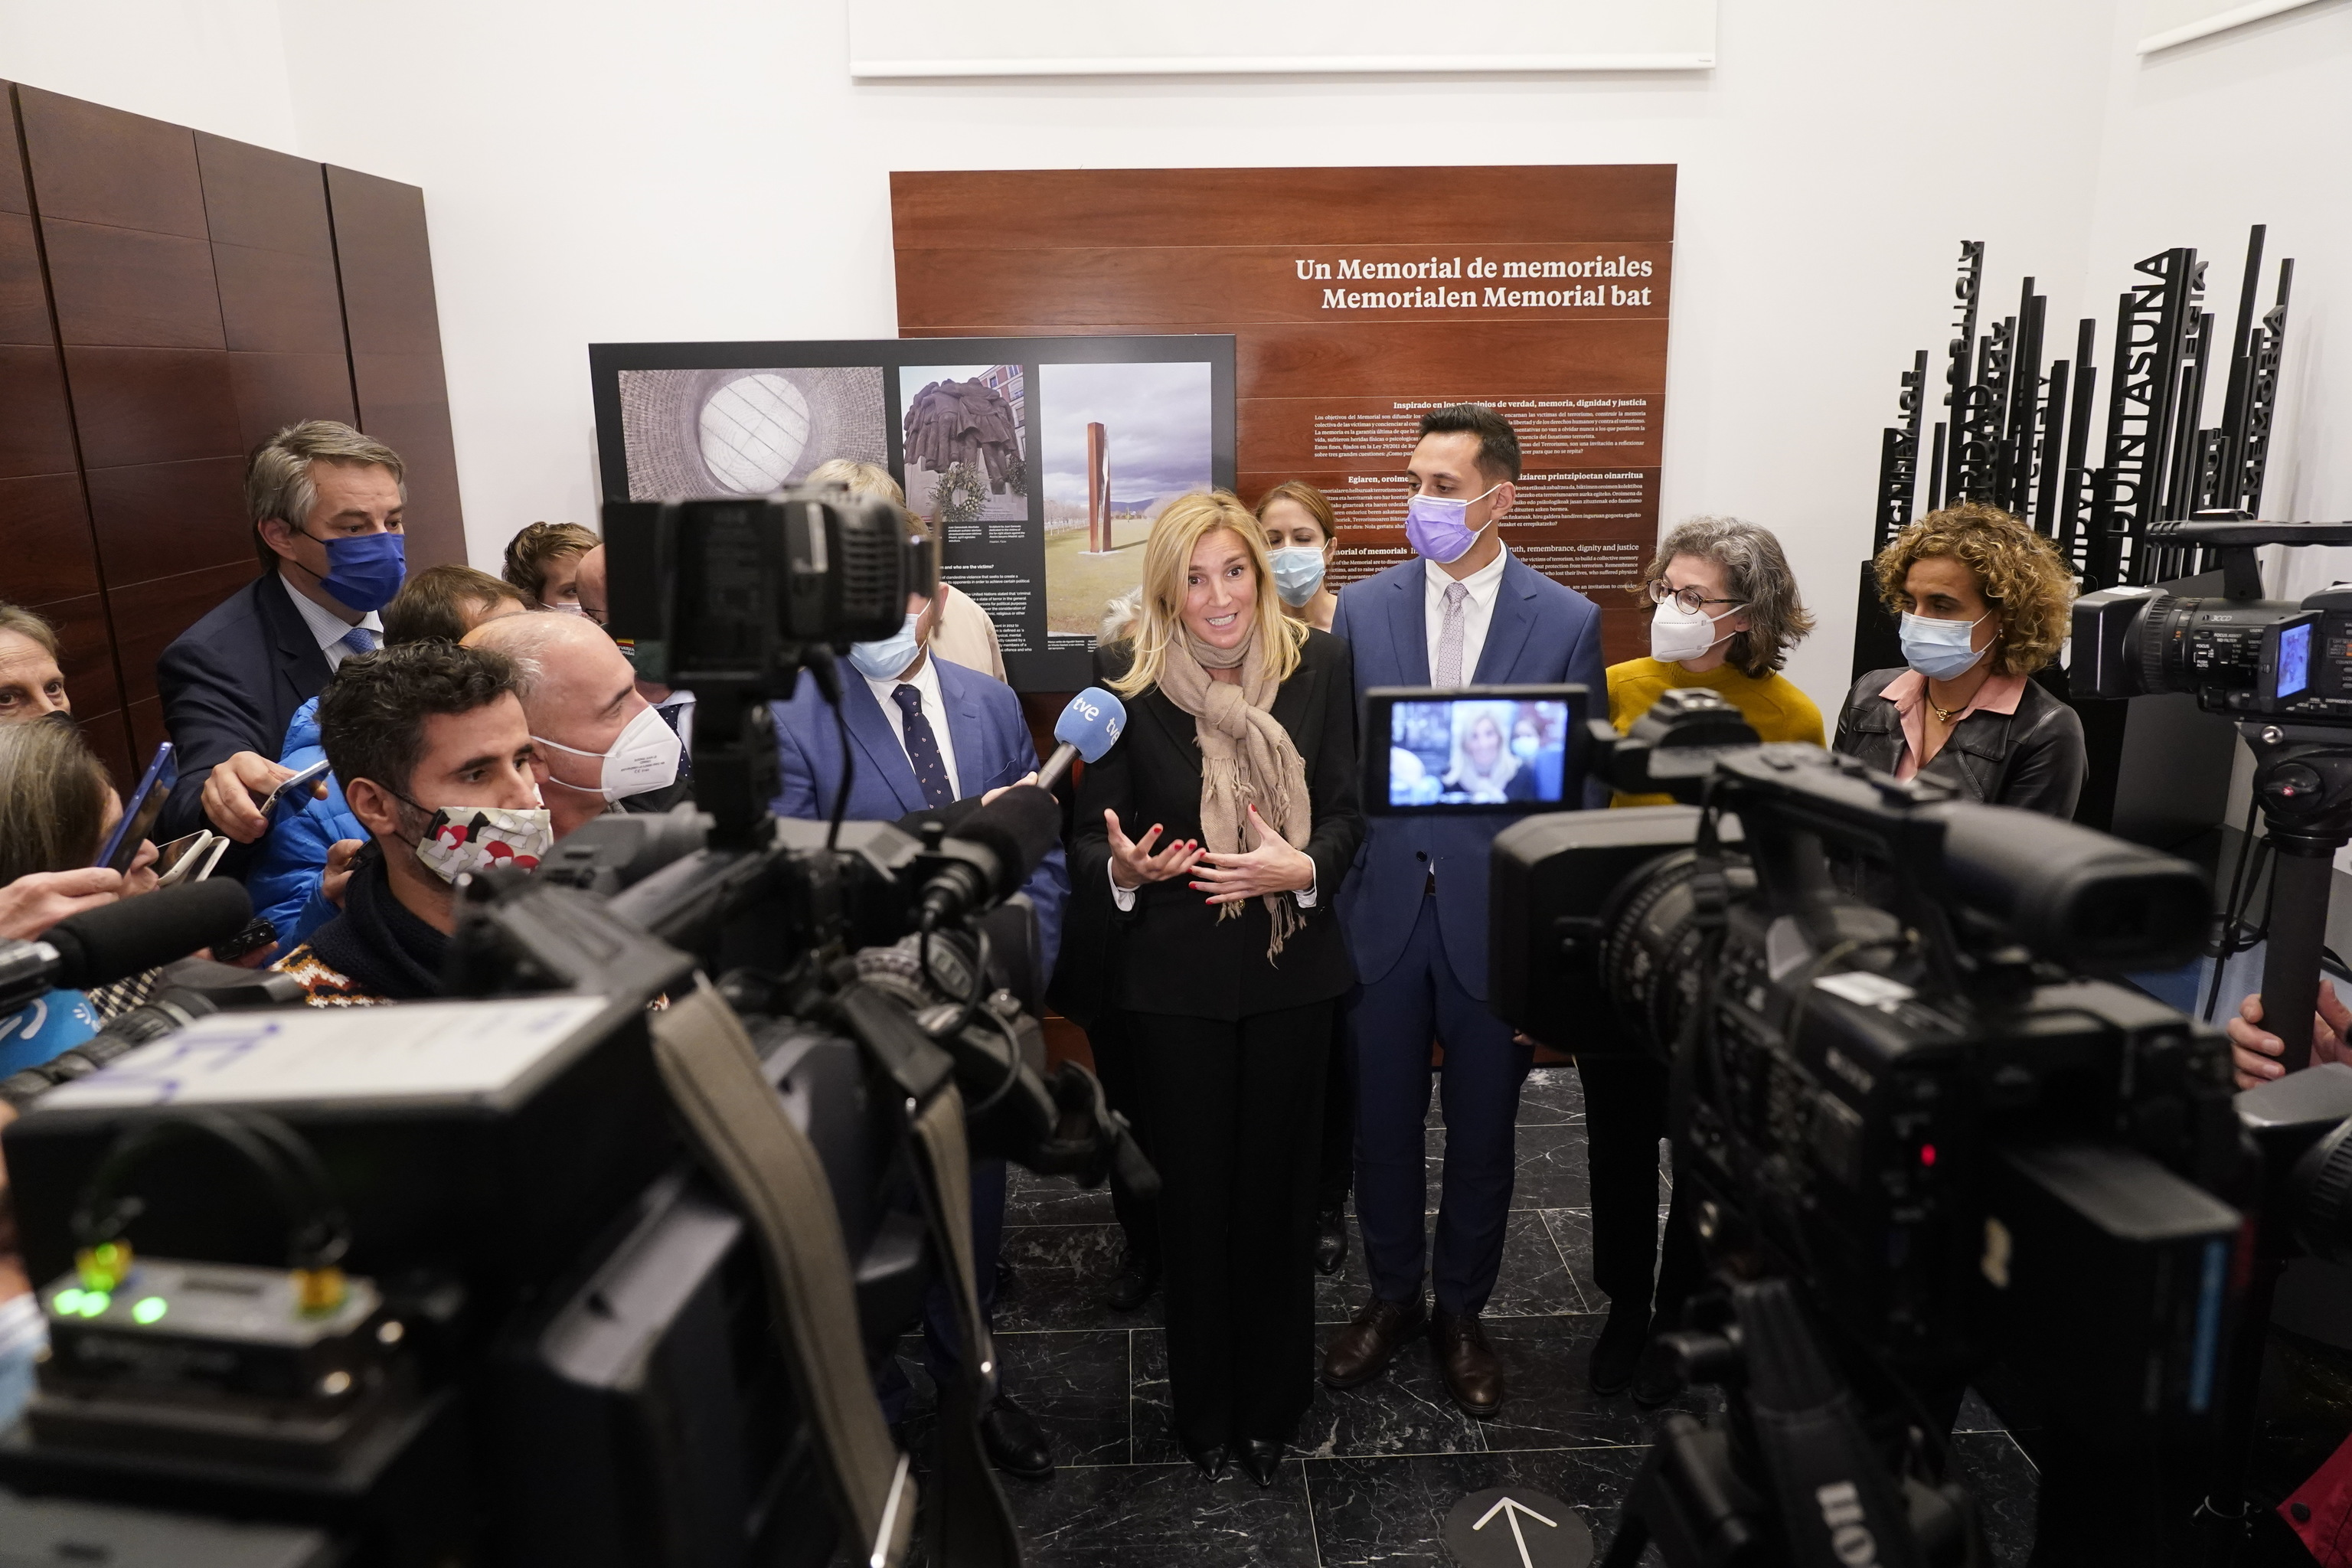 La europarlamentaria y presidenta de la delegacin Agns Evren comparece ante los medios tras visitar el Centro Memorial de Vctimas del Terrorismo en Vitoria.